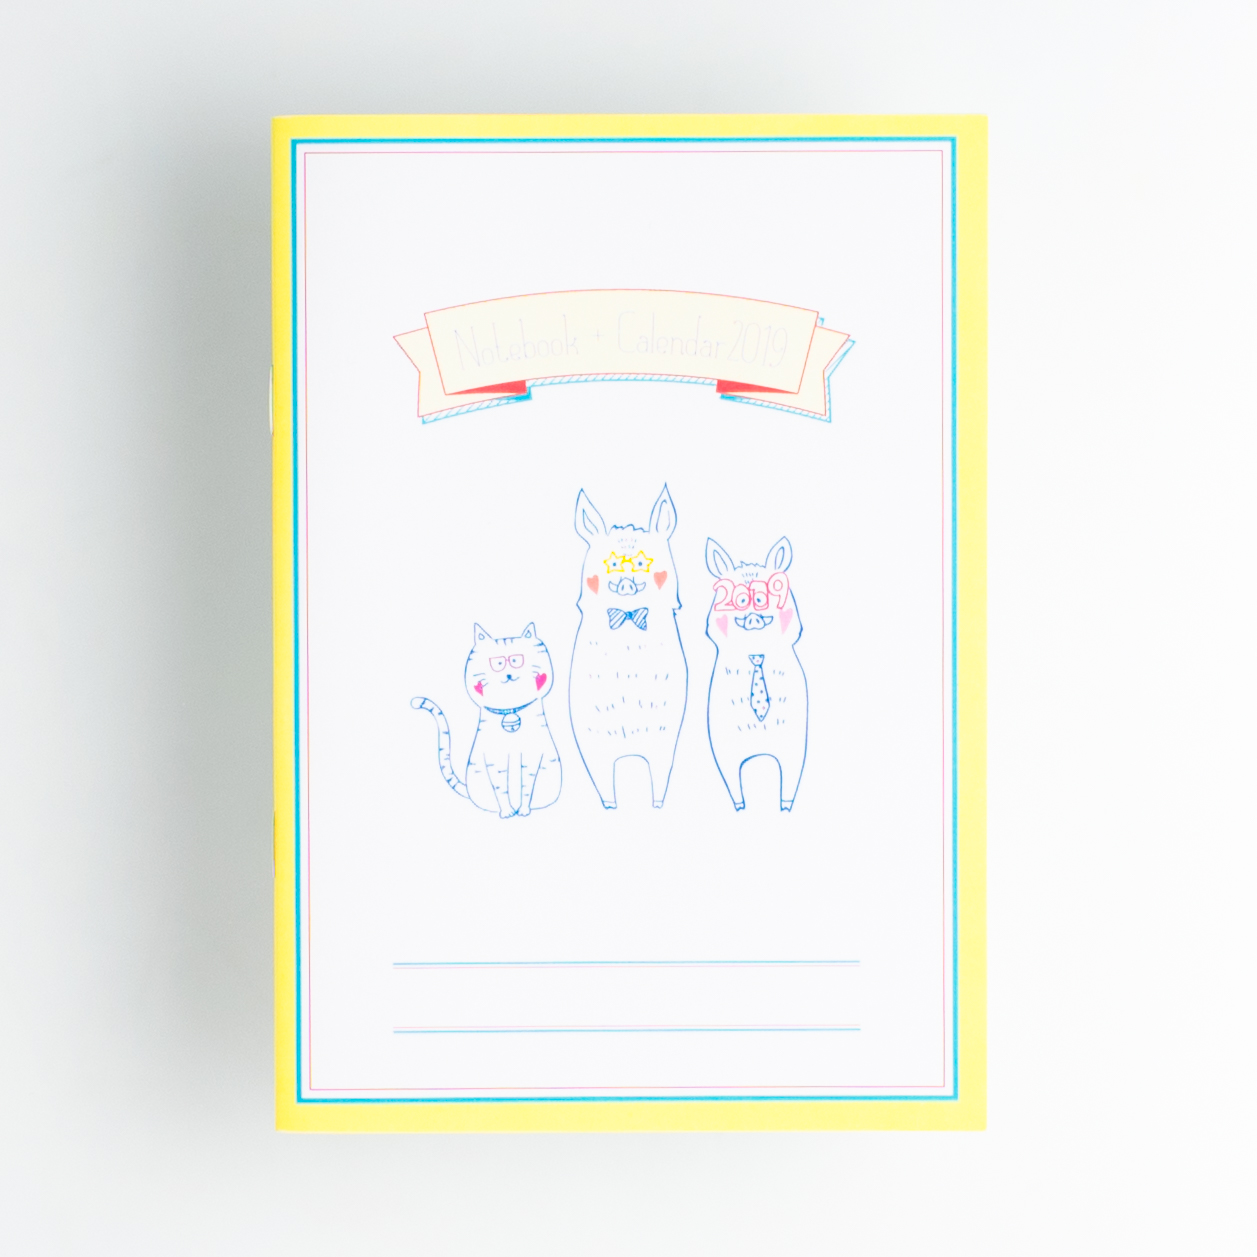 「KANAE Illustration＆design 様」製作のオリジナルノート